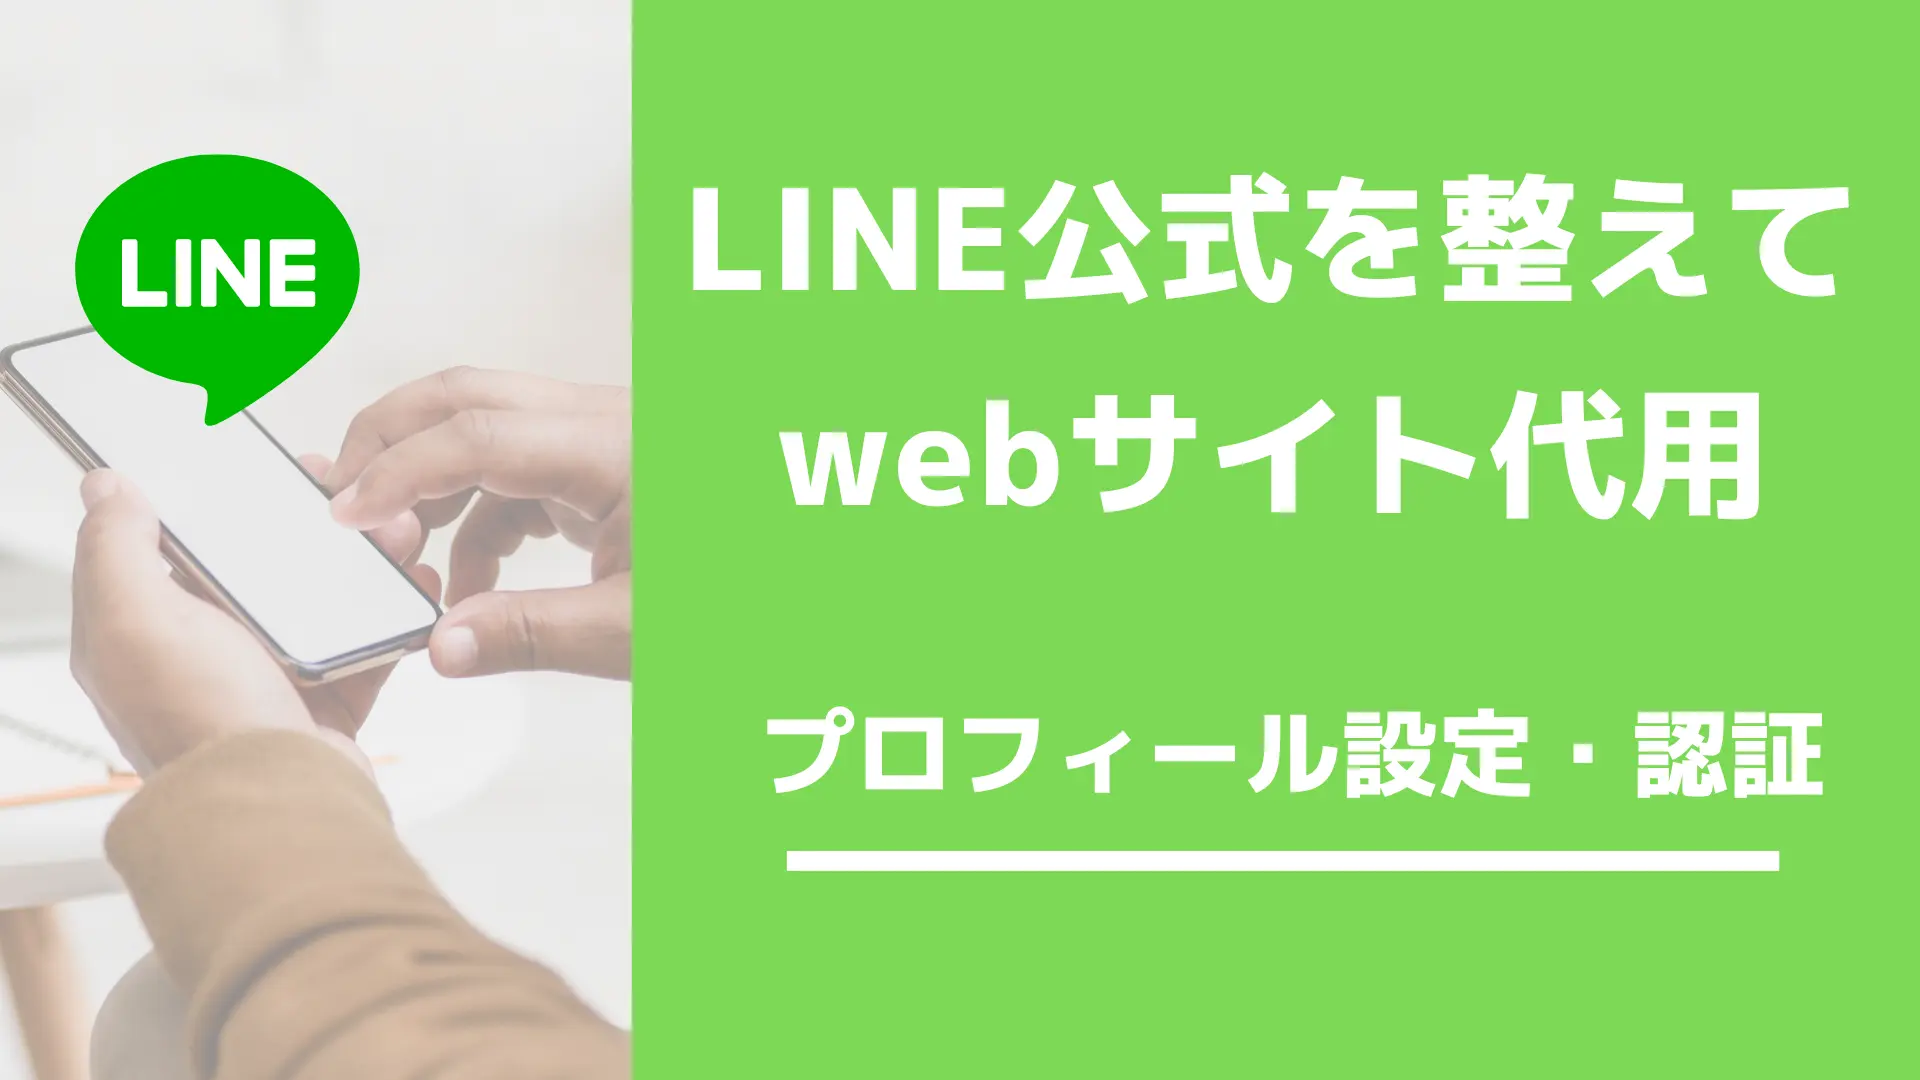 LINE公式アカウントを整えたら、webサイトとして代用できる | SNS 